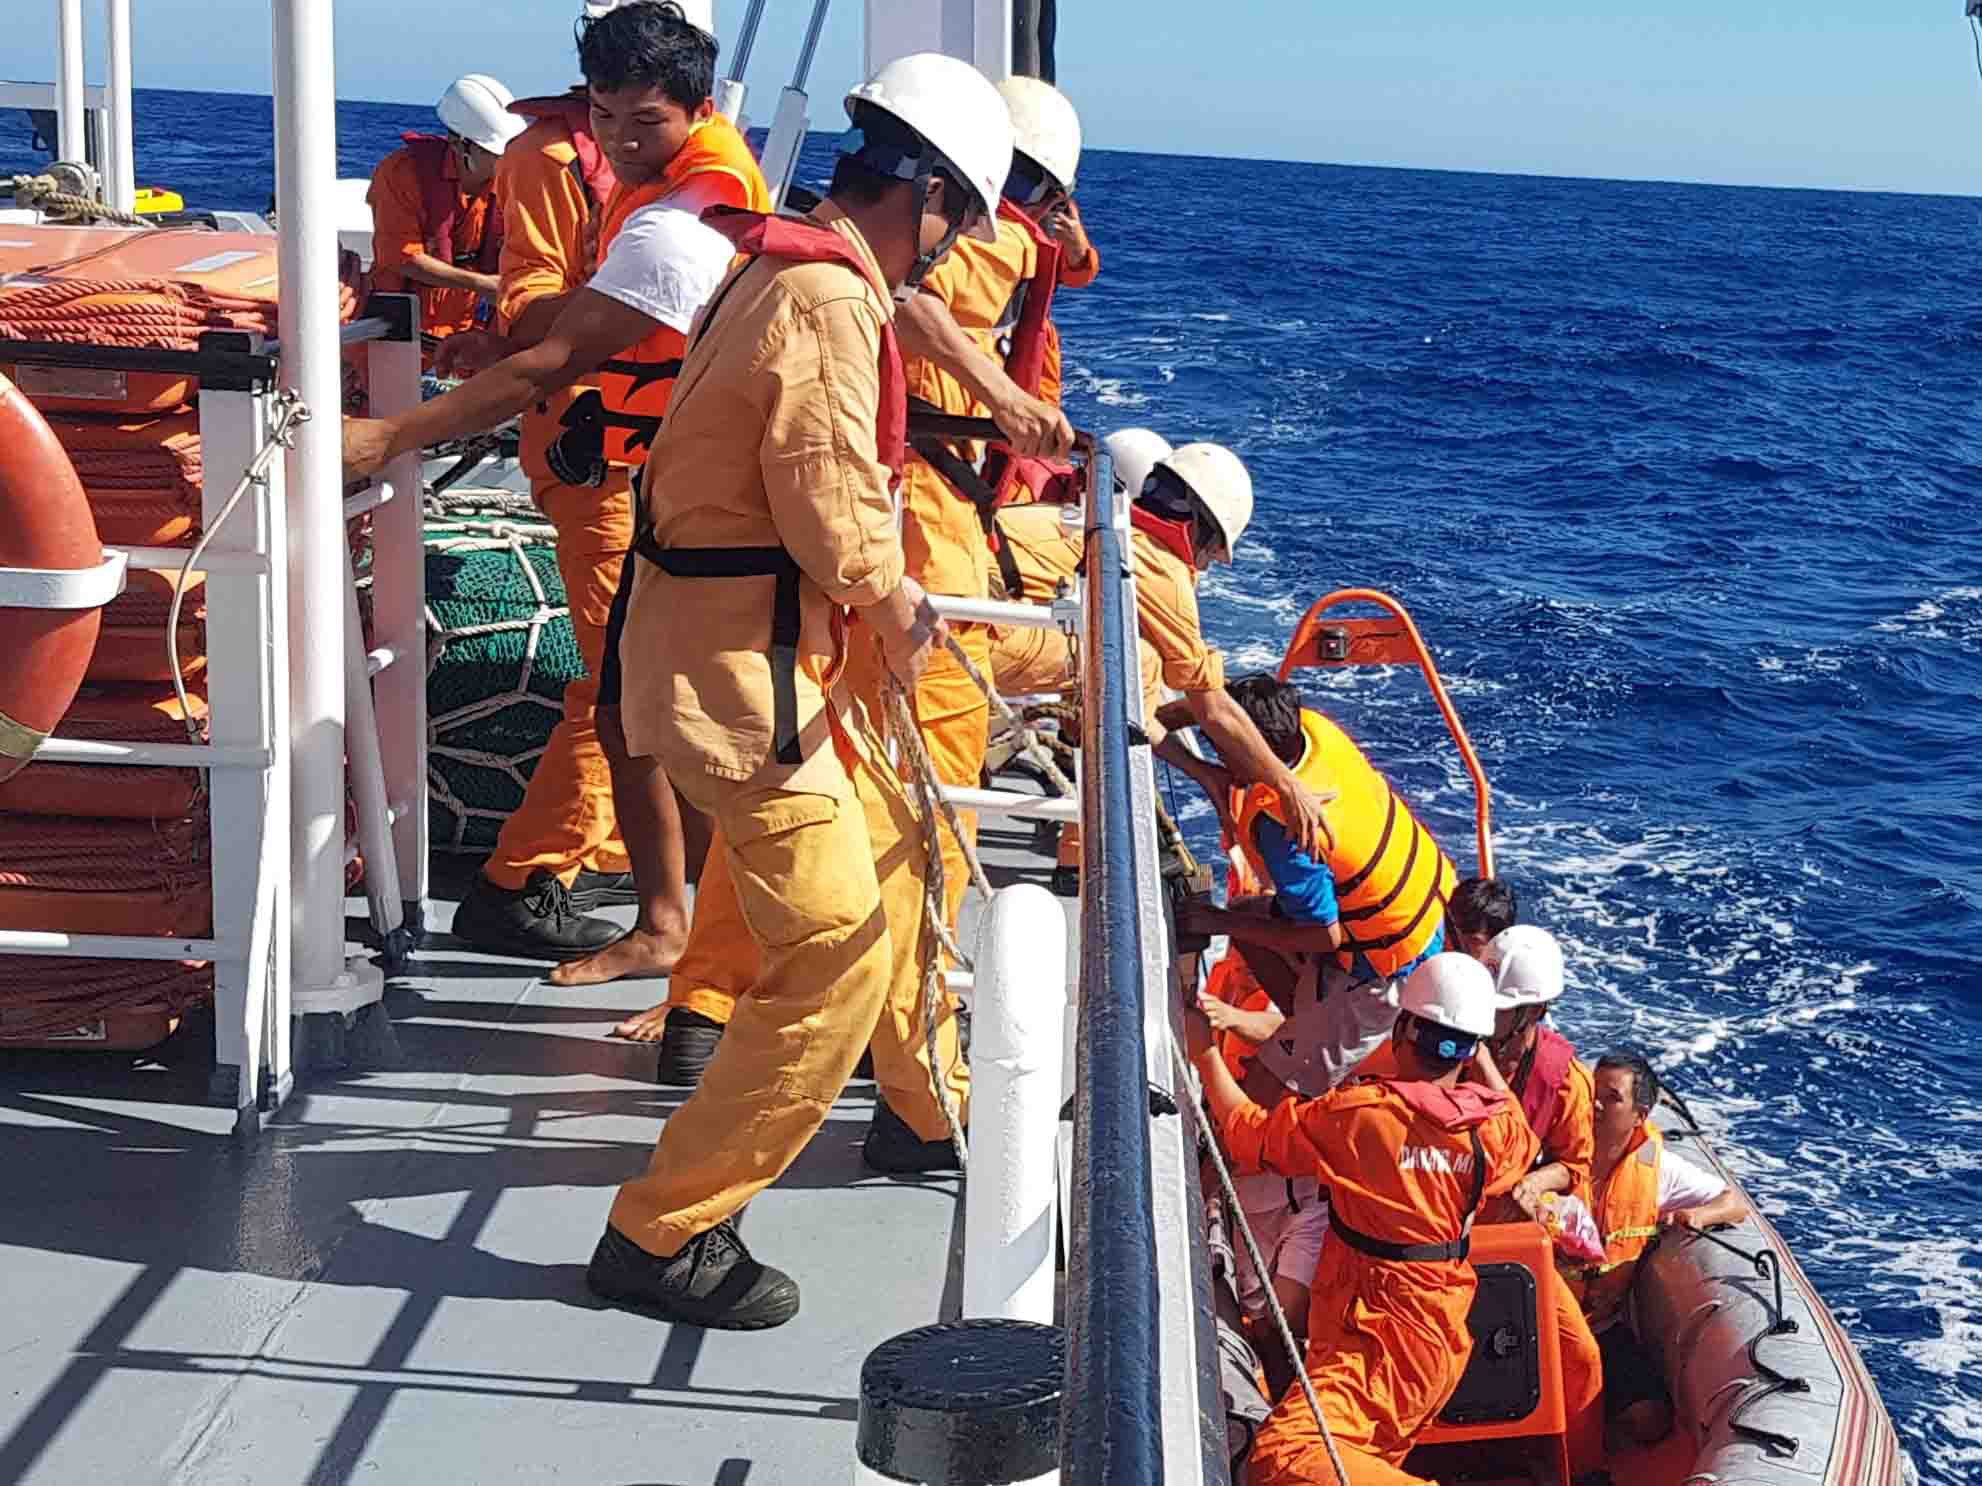 06 thuyền viên gặp nạn tàu QB 93838 TS được lực lượng cứu nạn hàng hải tìm kiếm và cứu sống